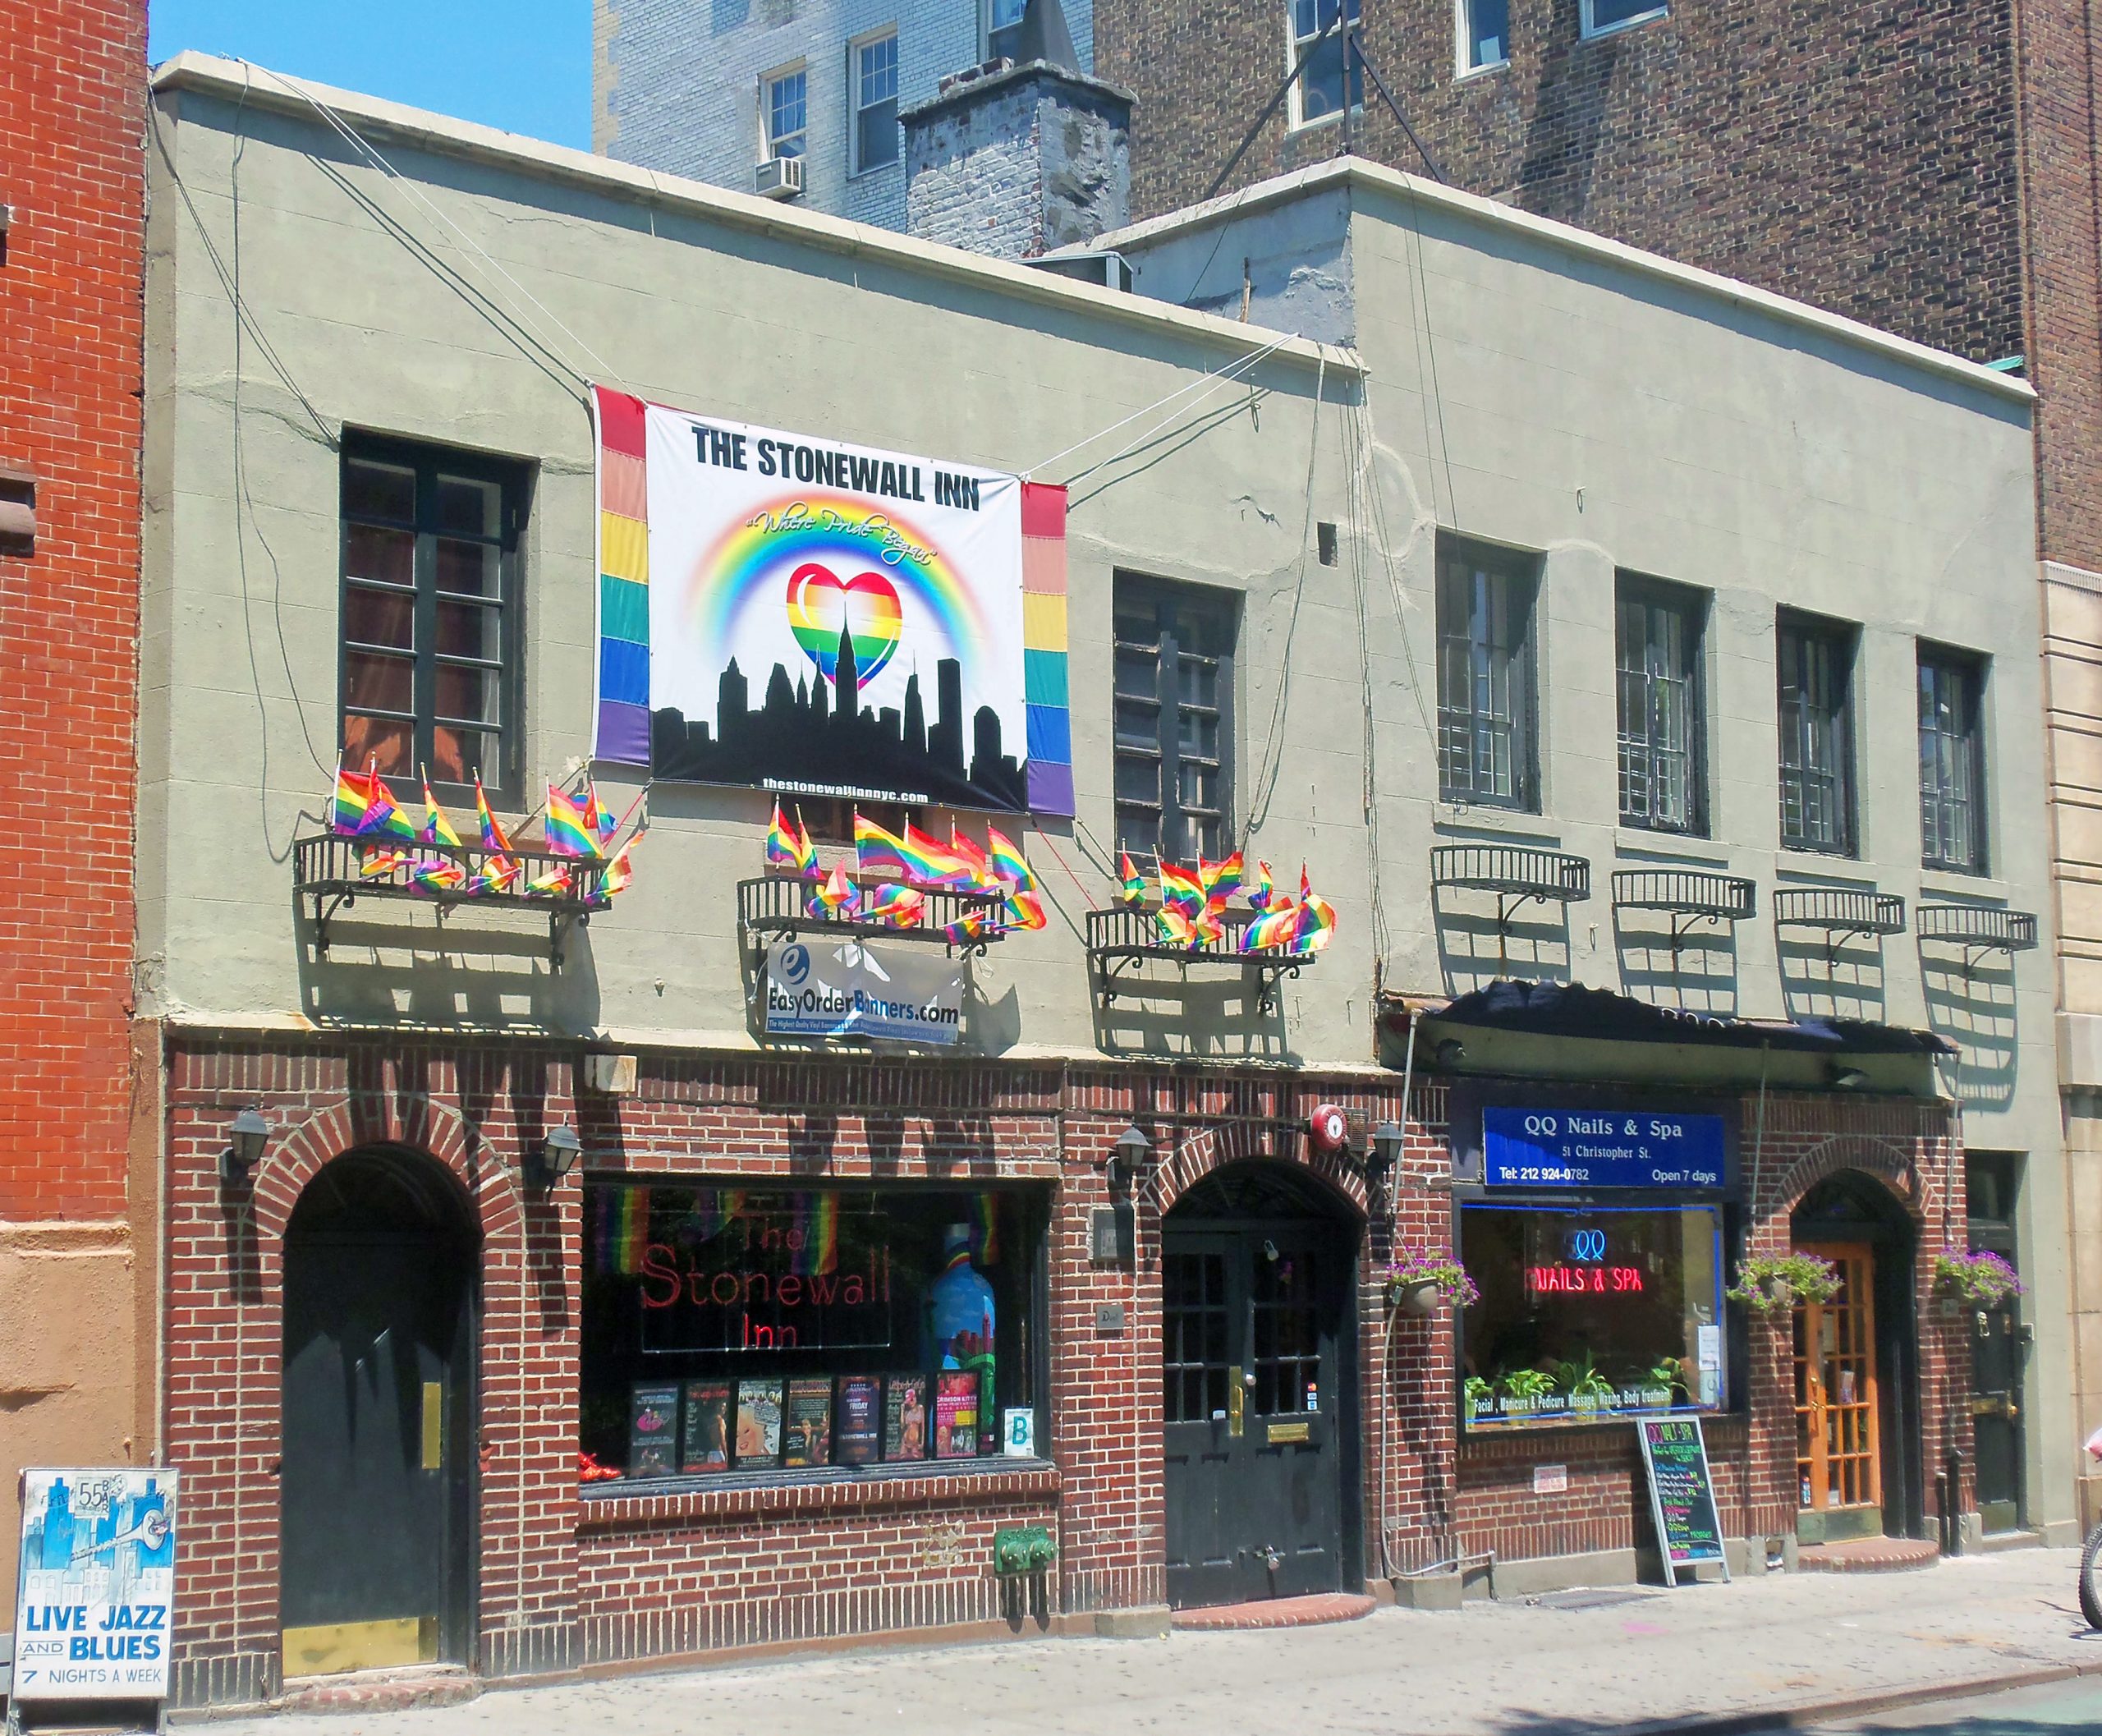 ¿Qué han hecho para evitar el cierre de Stonewall?